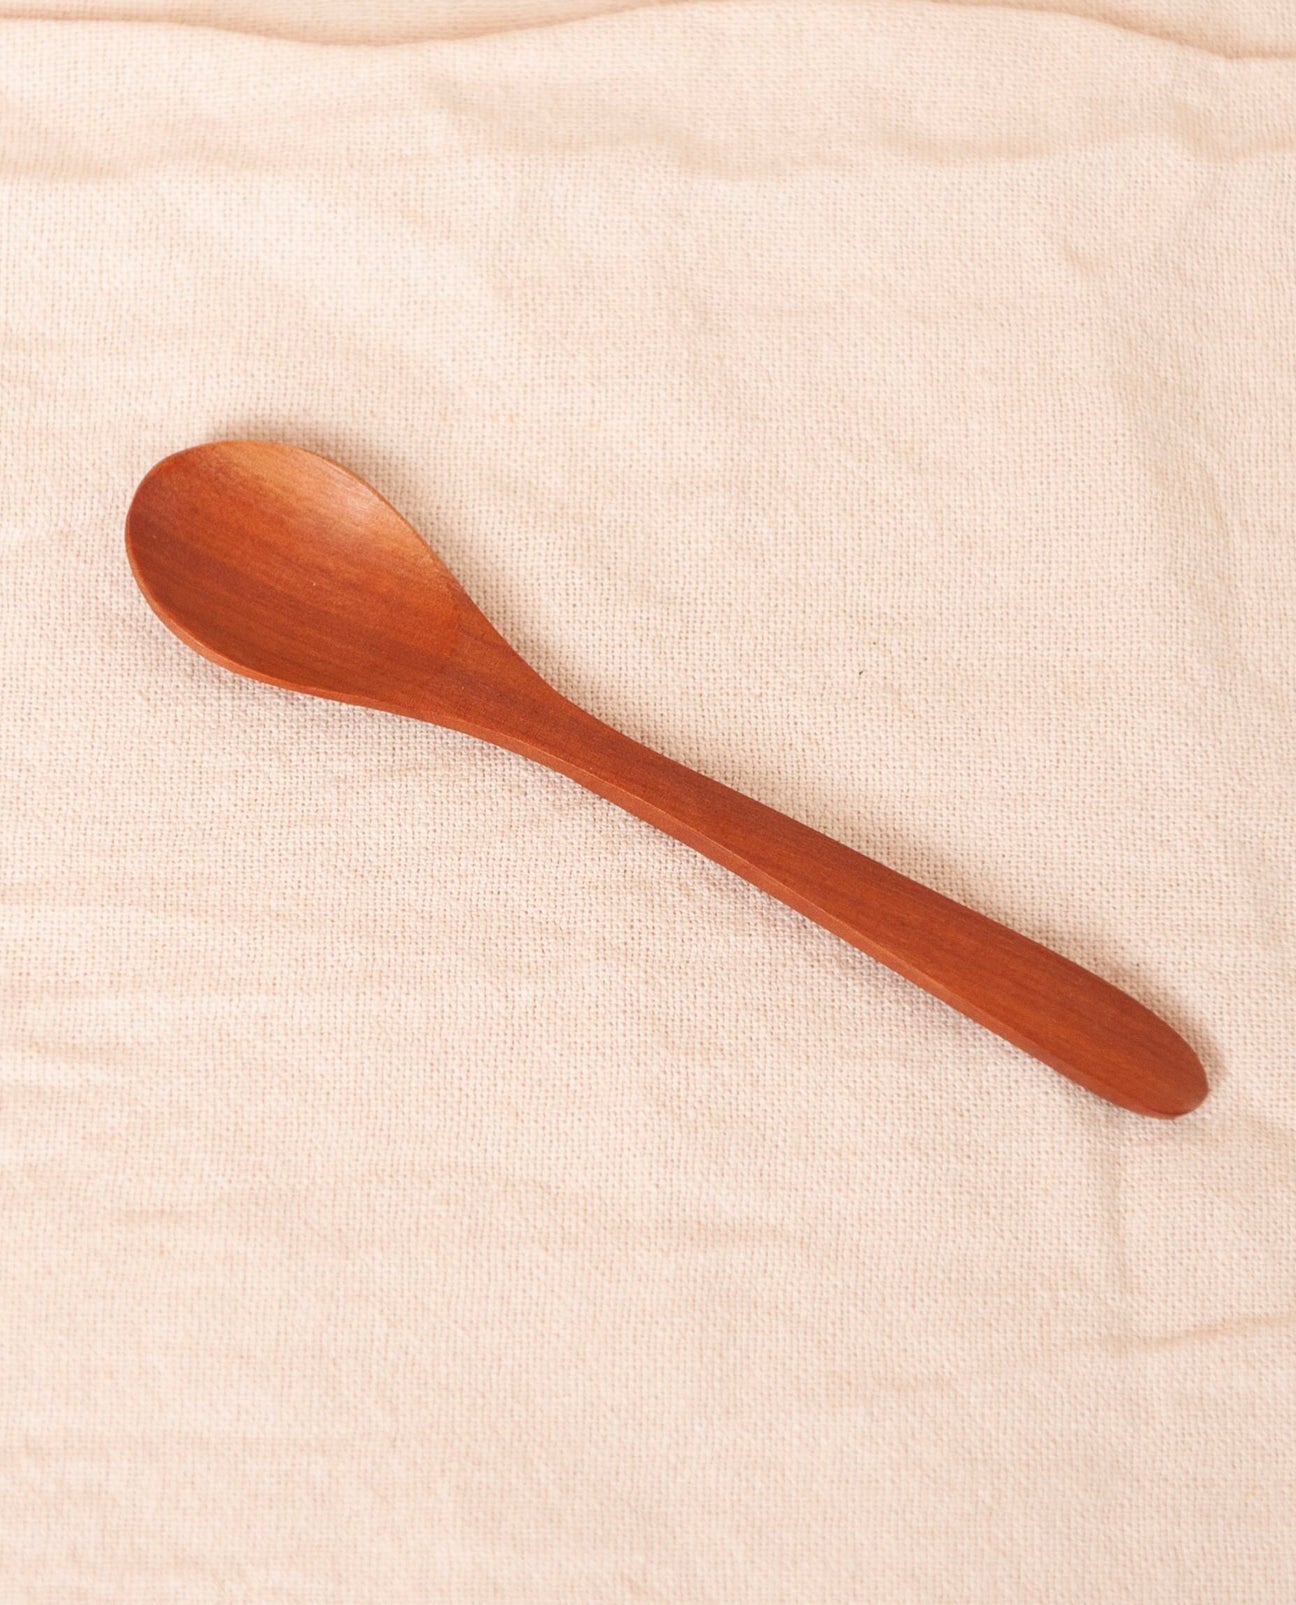 SETIA Baby Spoon